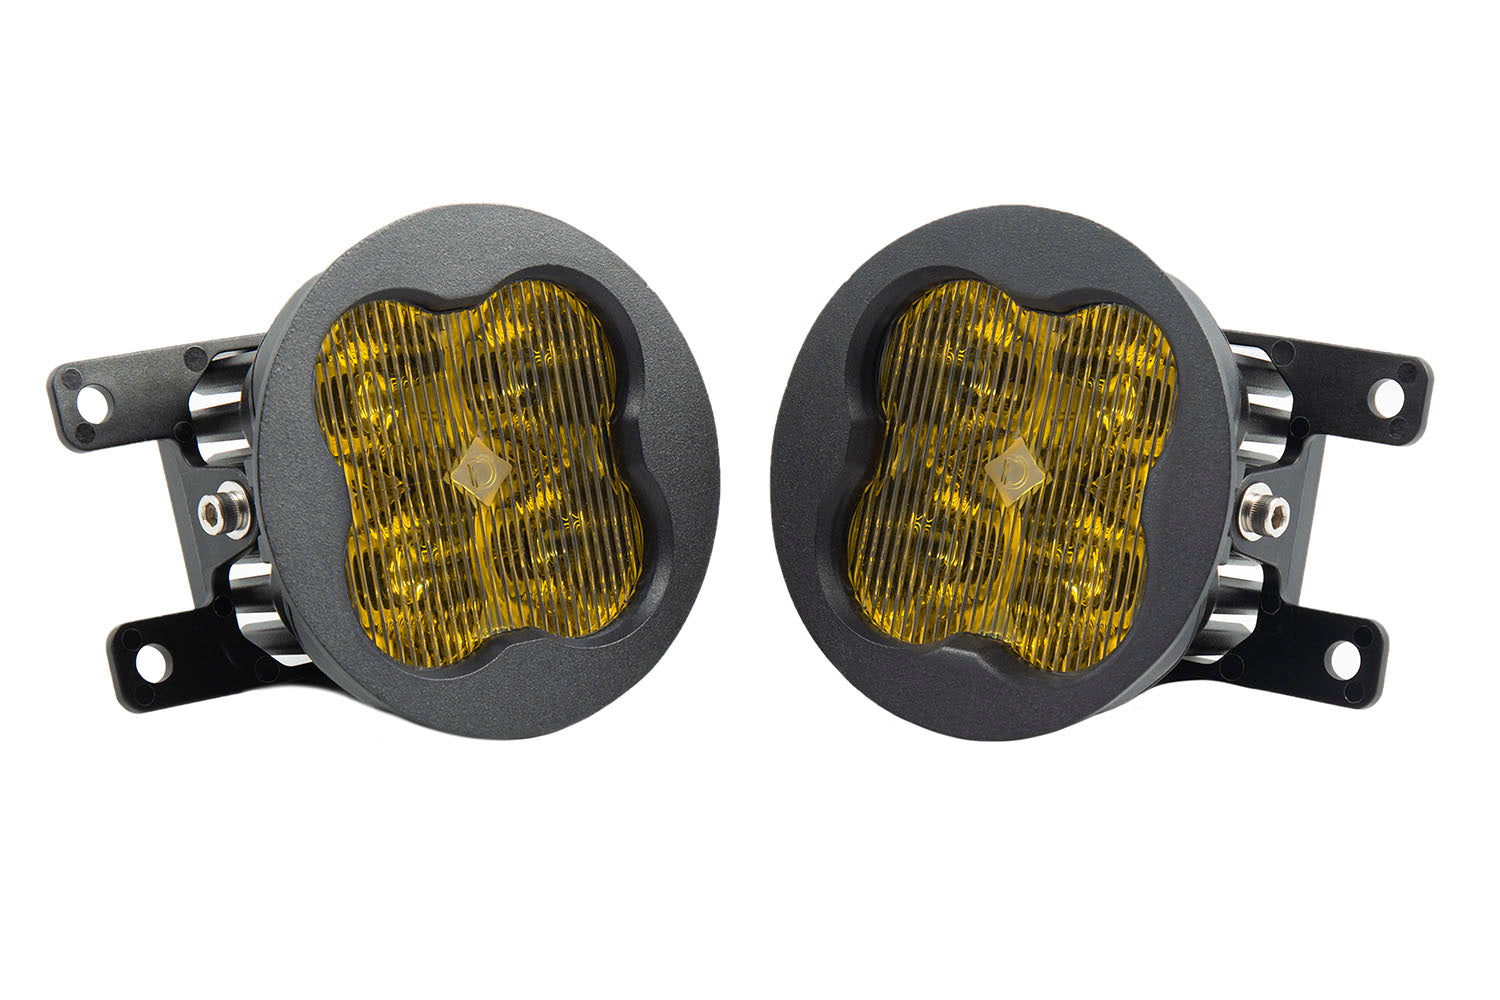 SS3 LED Fog Light Kit for 2013-2016 Honda CR-Z Yellow SAE Fog Sport Diode Dynamics